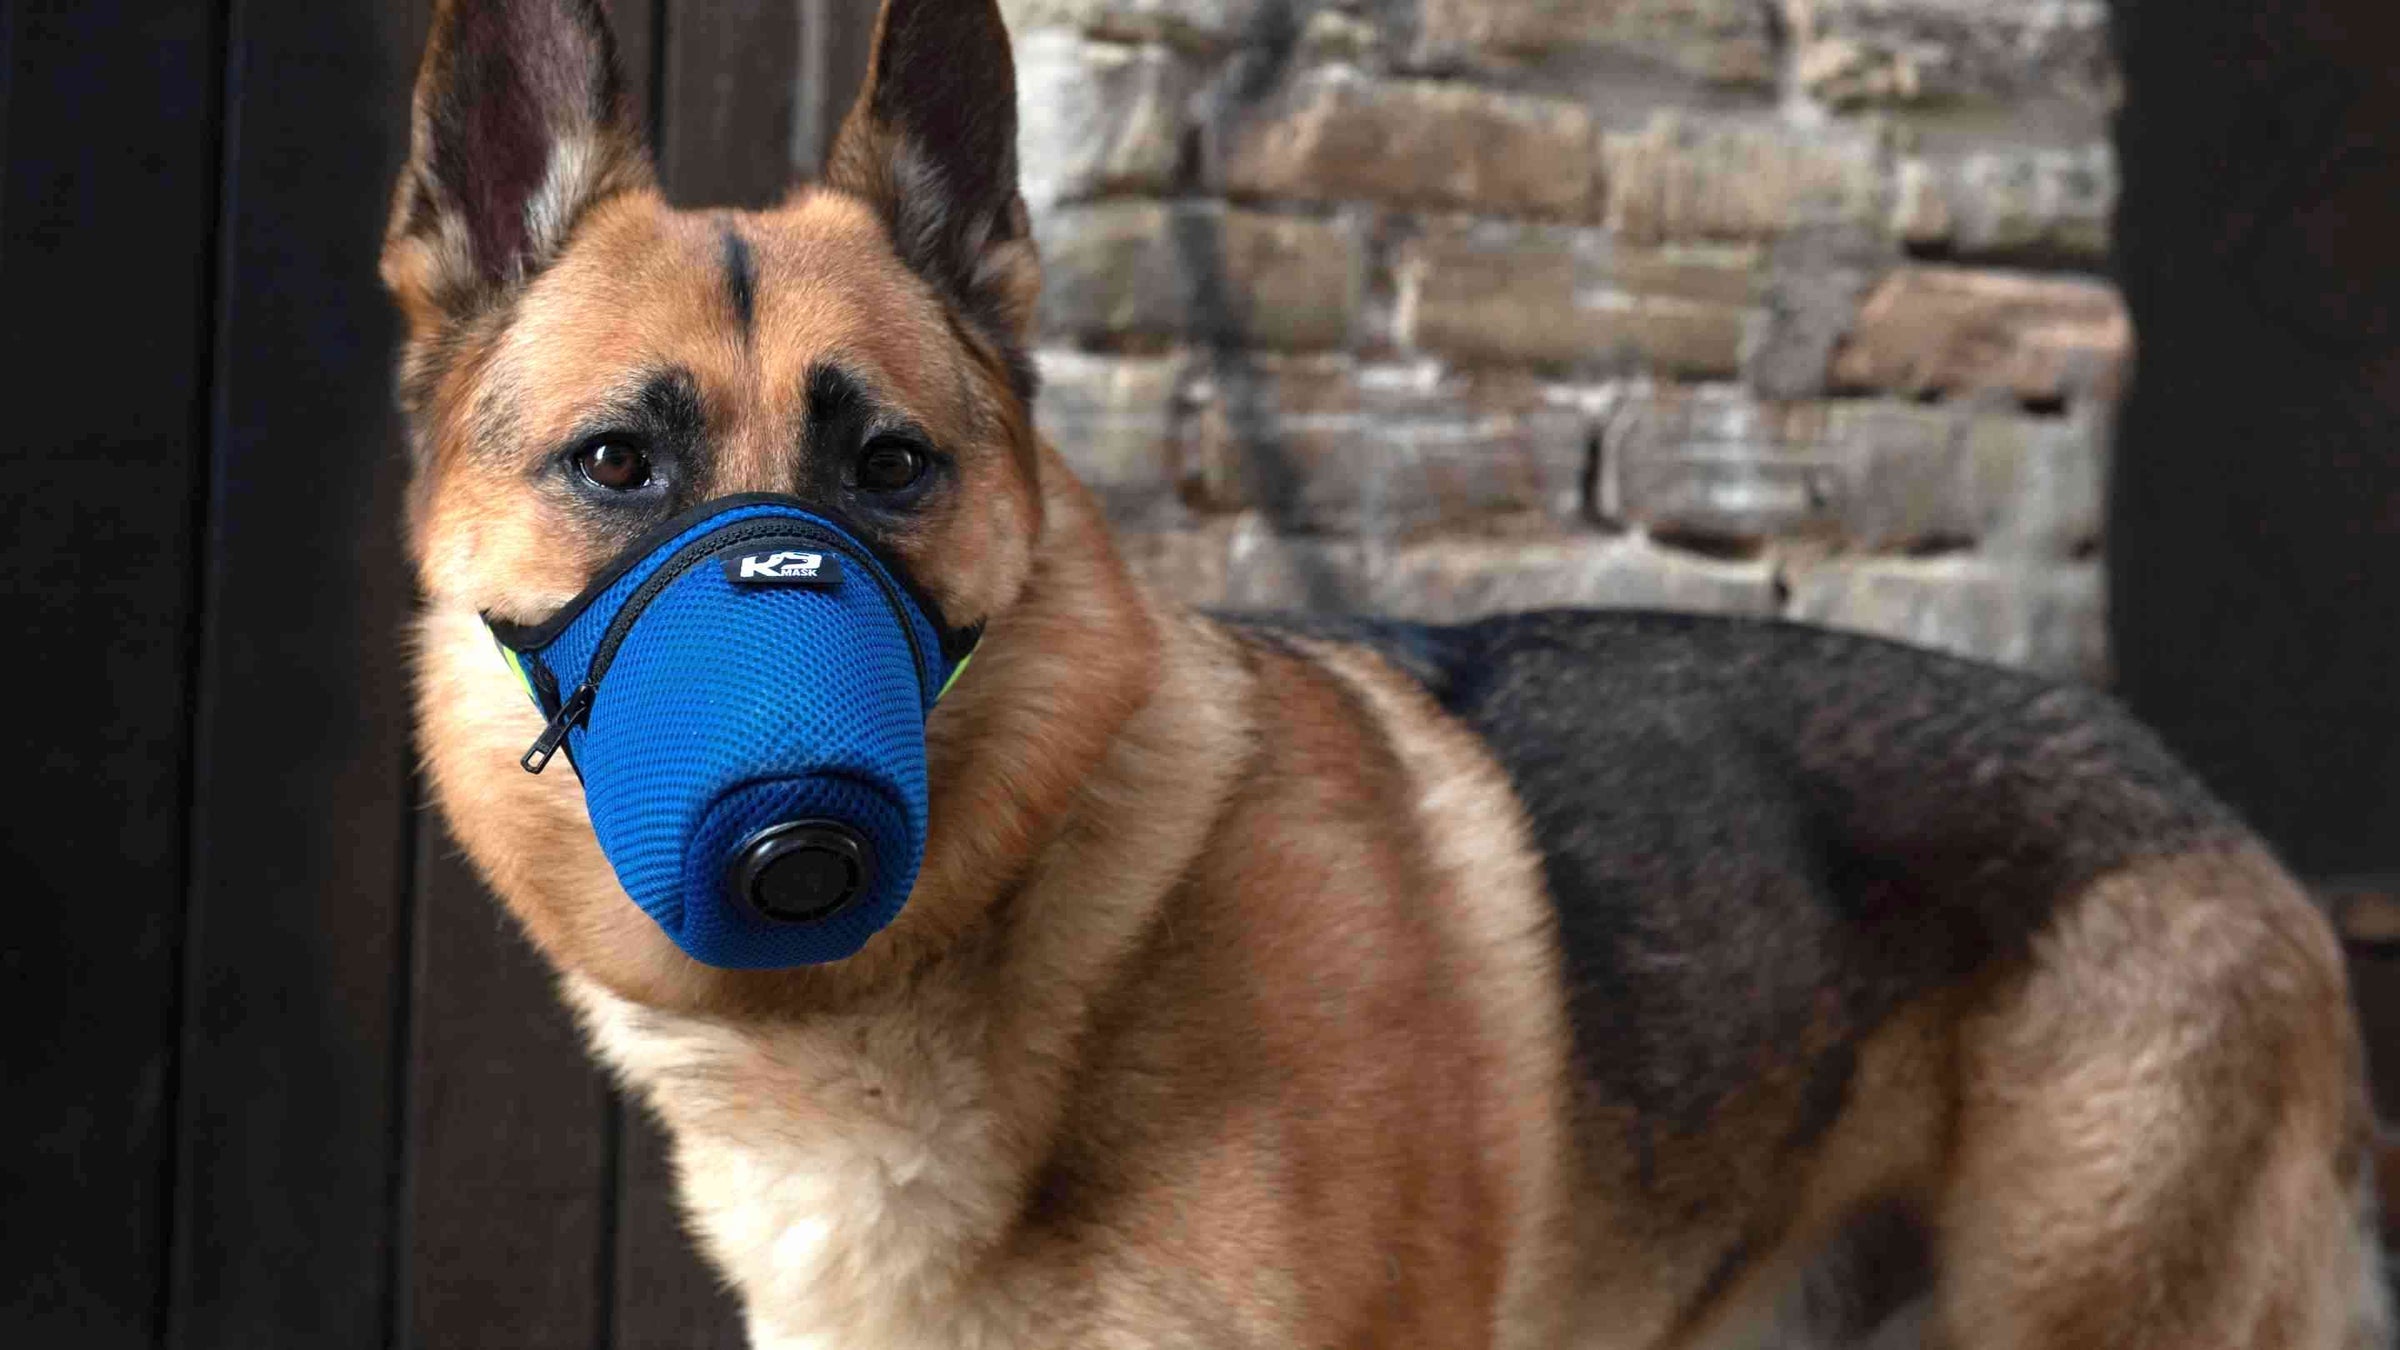 K9 Цагдаагийн нохойн нэгжийн эрүүл мэндийг хамгаалахад зориулсан опиоид фентанил маск